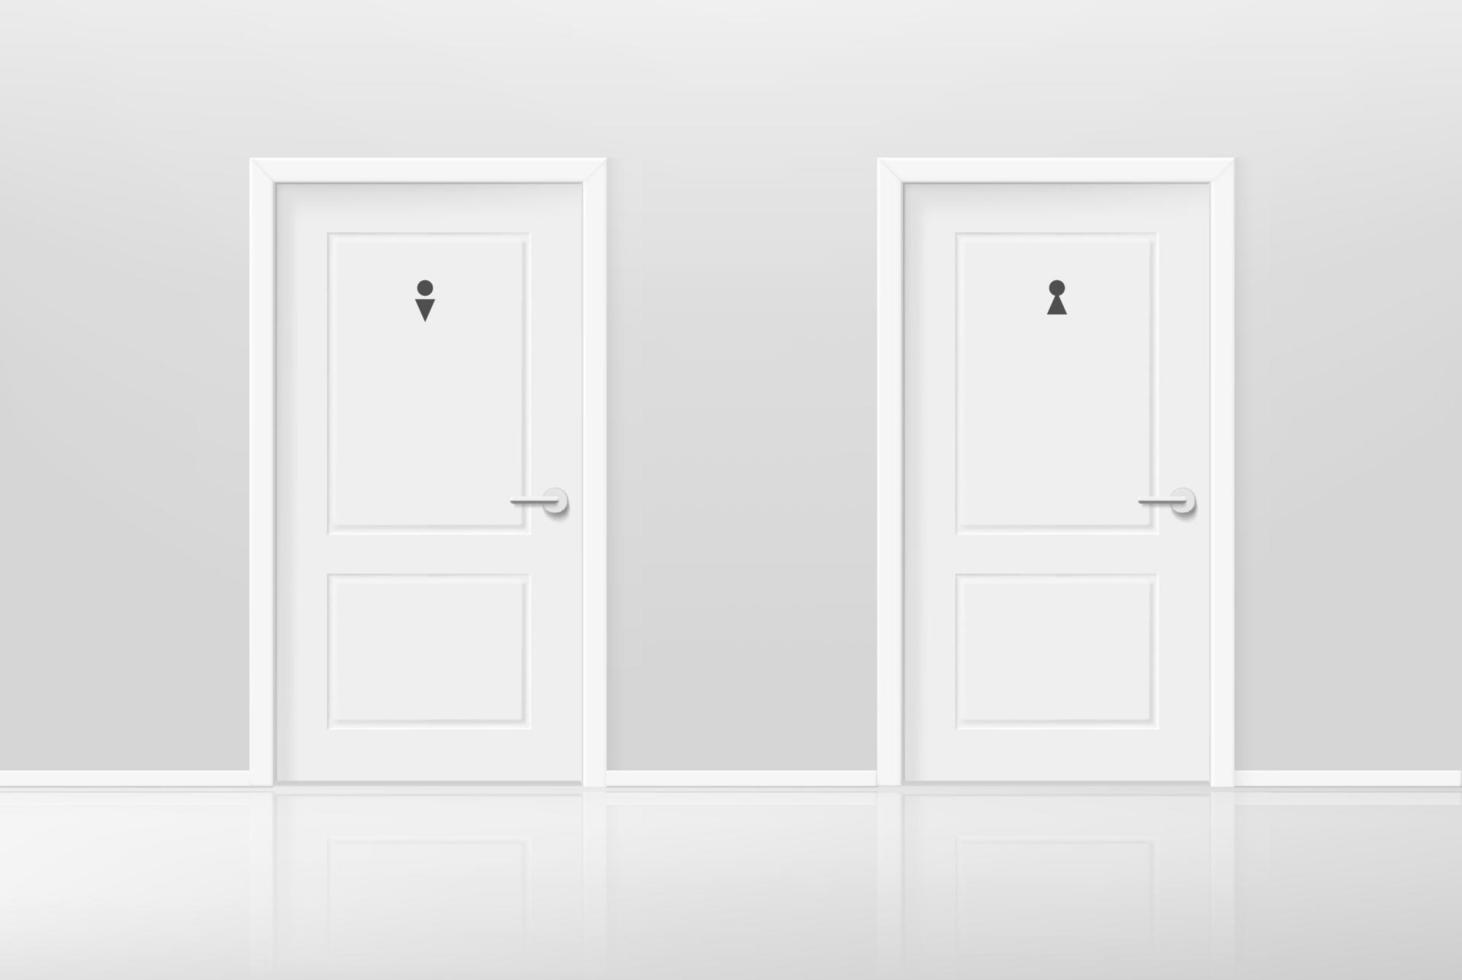 portas de banheiros masculinos e femininos no interior luminoso. ilustração em vetor estilo 3d realista